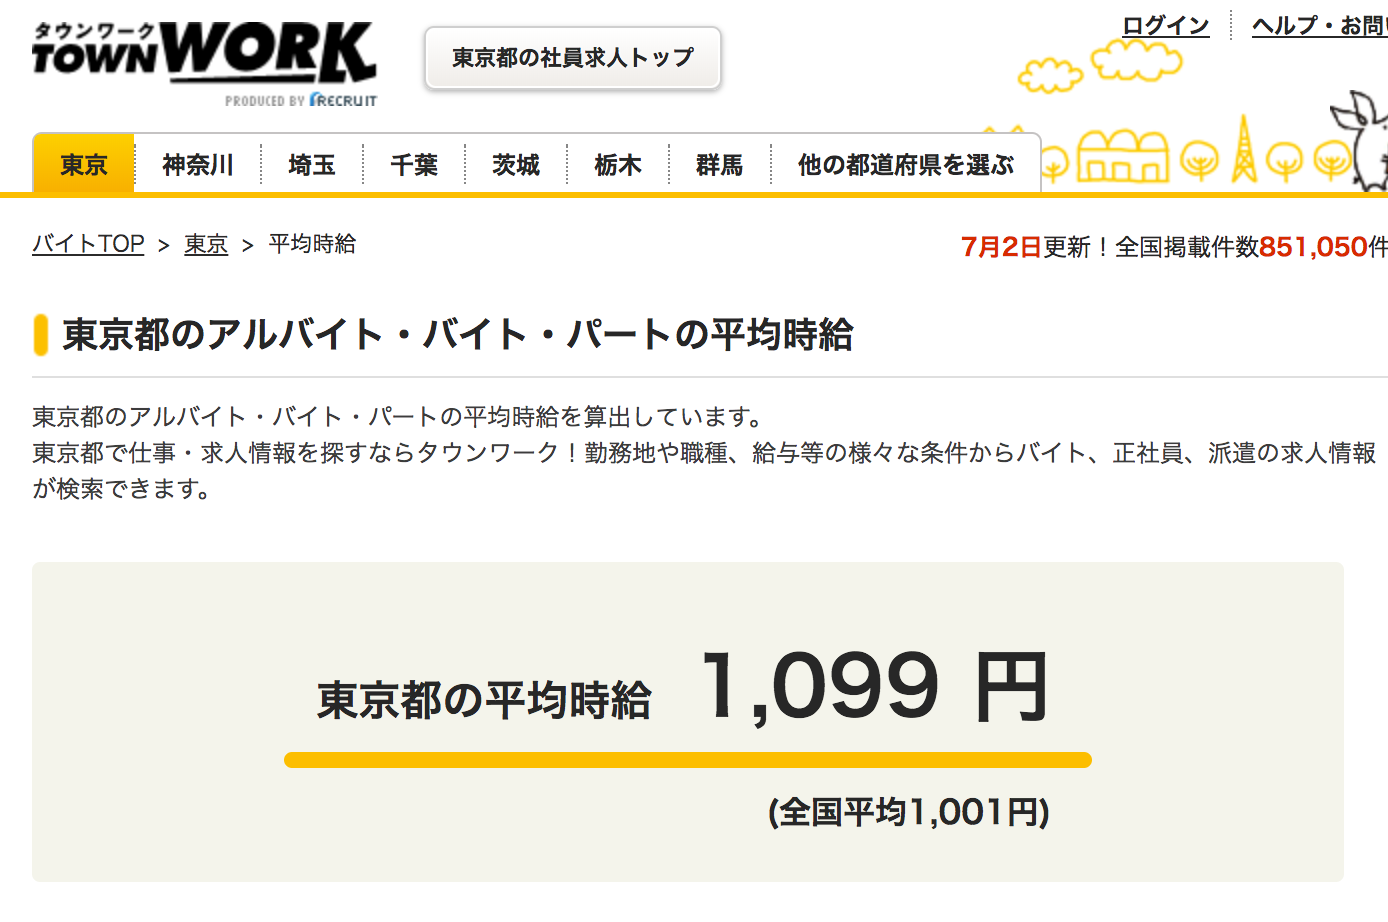 東京都の平均時給 1099円 |タウンワーク